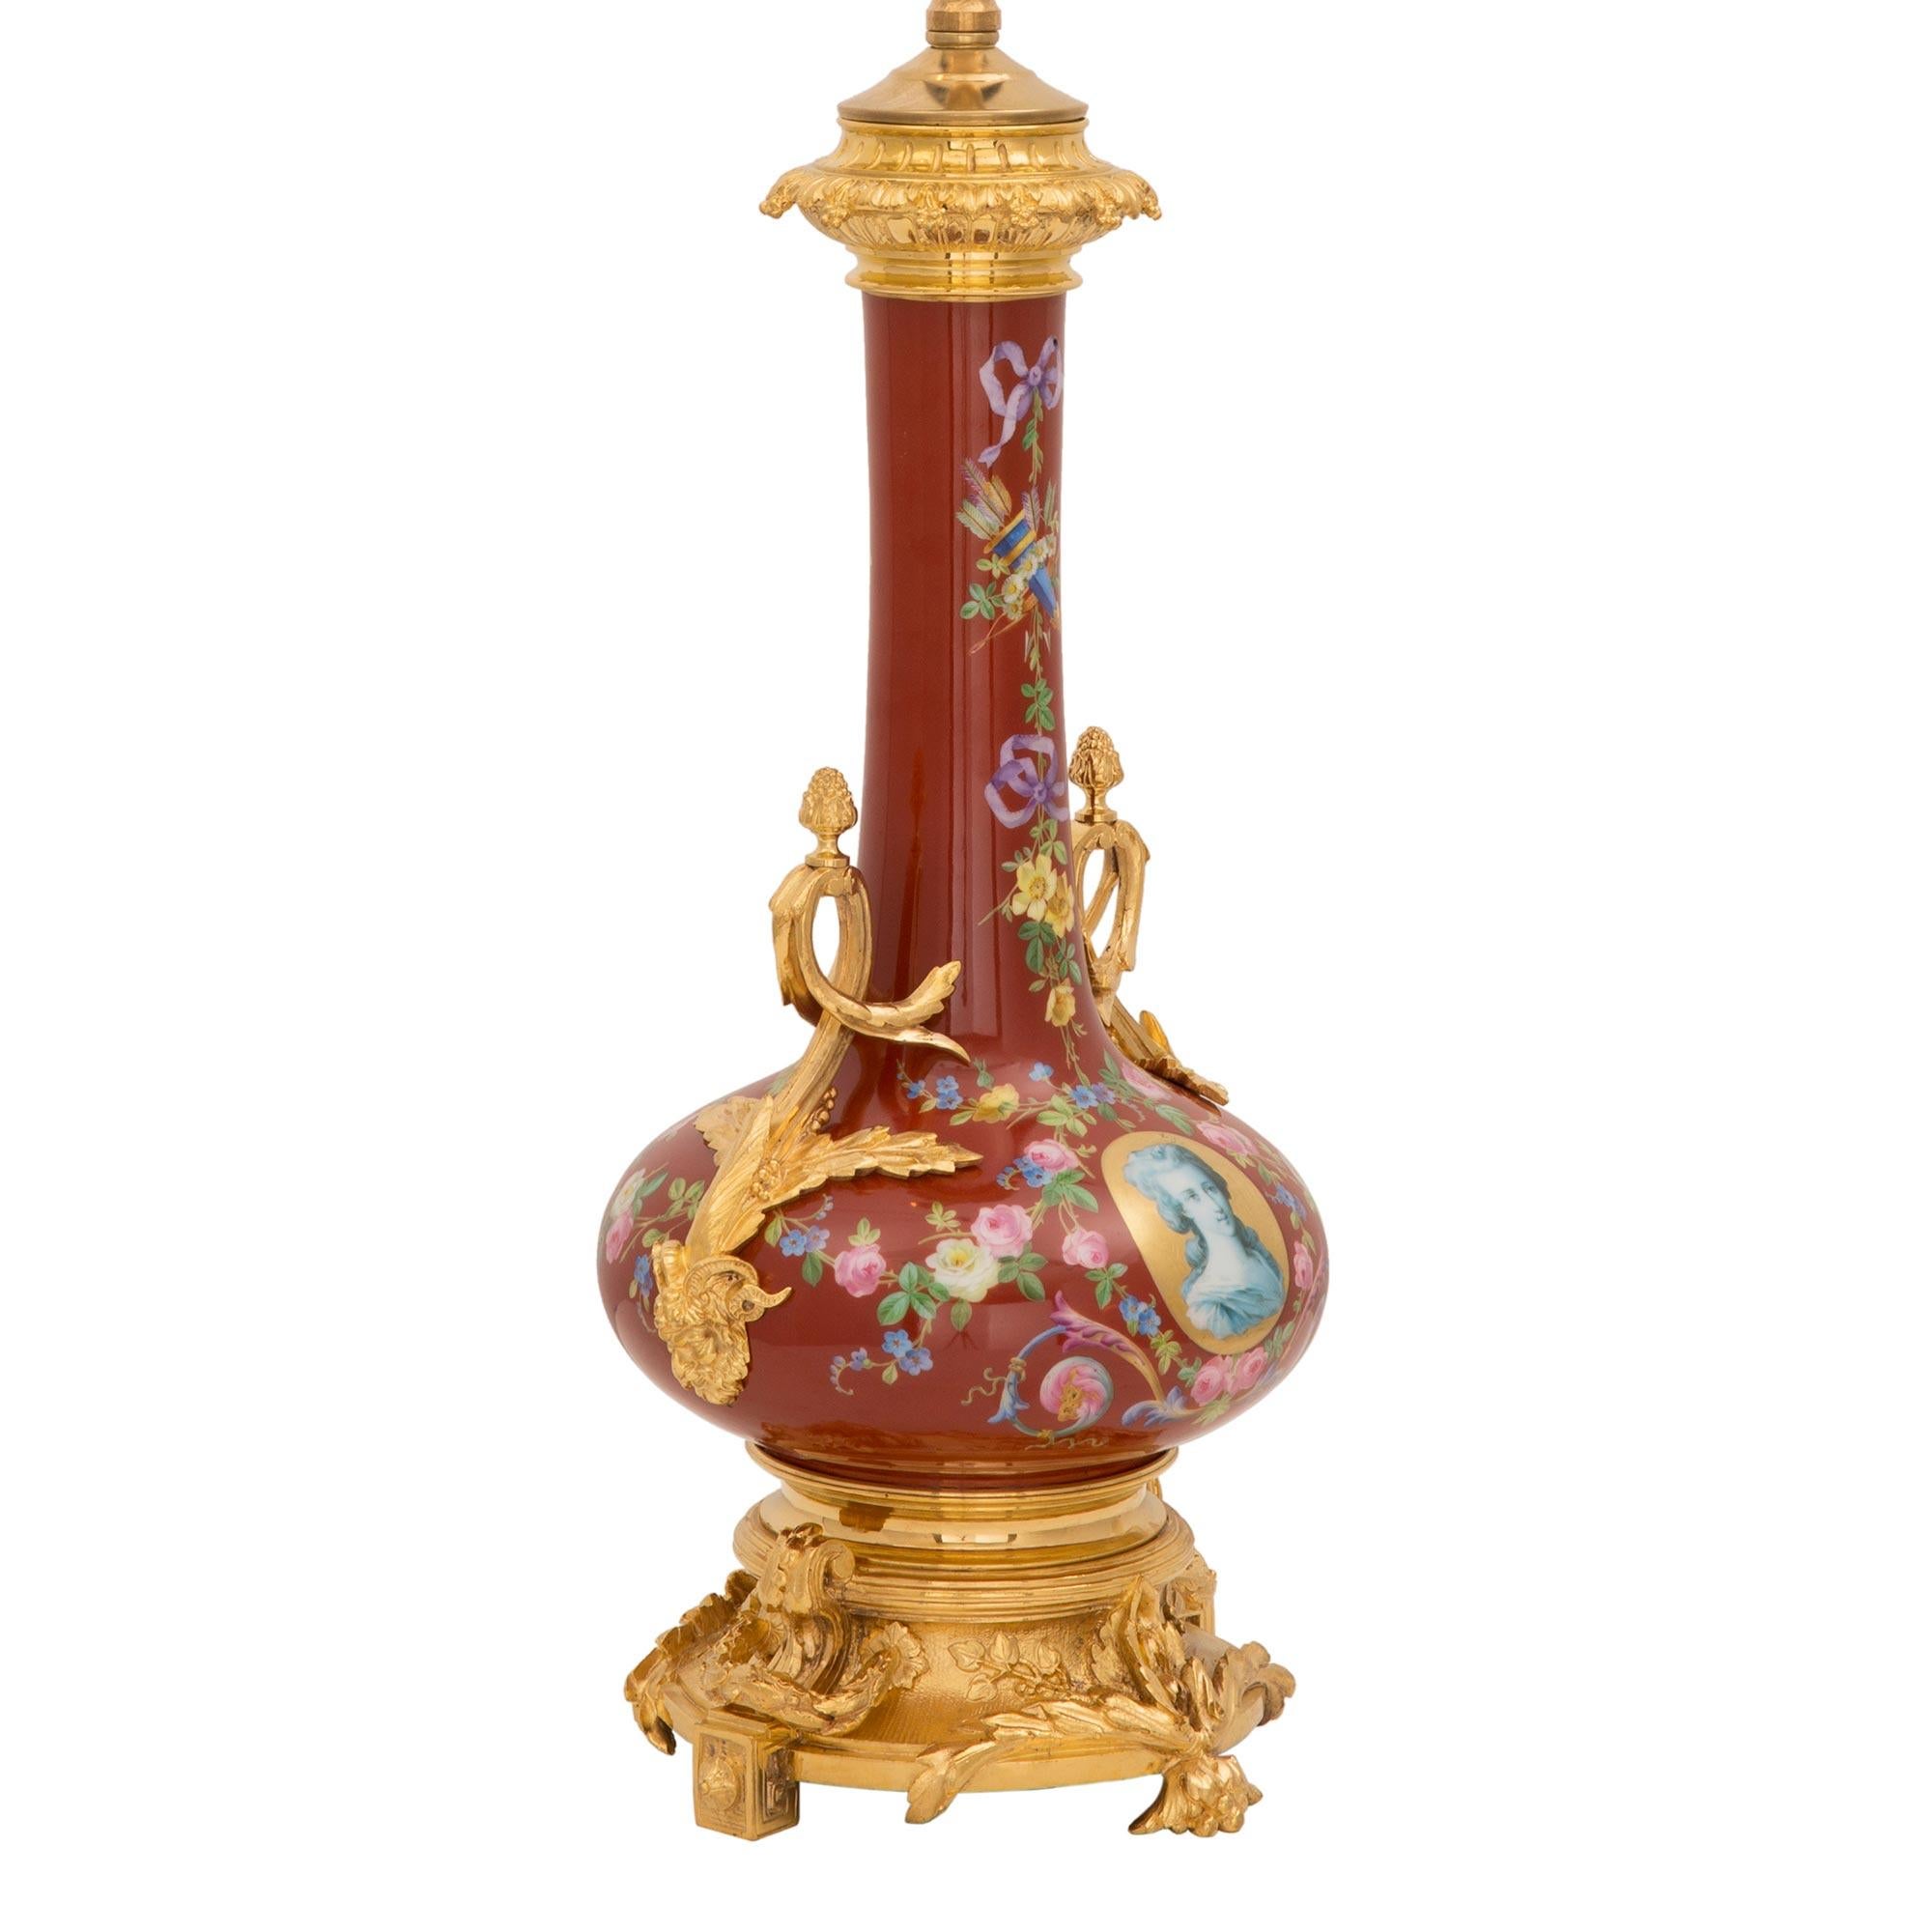 Schöne französische Porzellan- und Ormolu-Lampe aus dem 19. Jahrhundert im Stil Louis XV. Die Lampe wird von einem auffälligen, reich ziselierten Ormolu-Sockel mit feinen Blattwerken und griechischen Tasten in satinierter und brünierter Ausführung